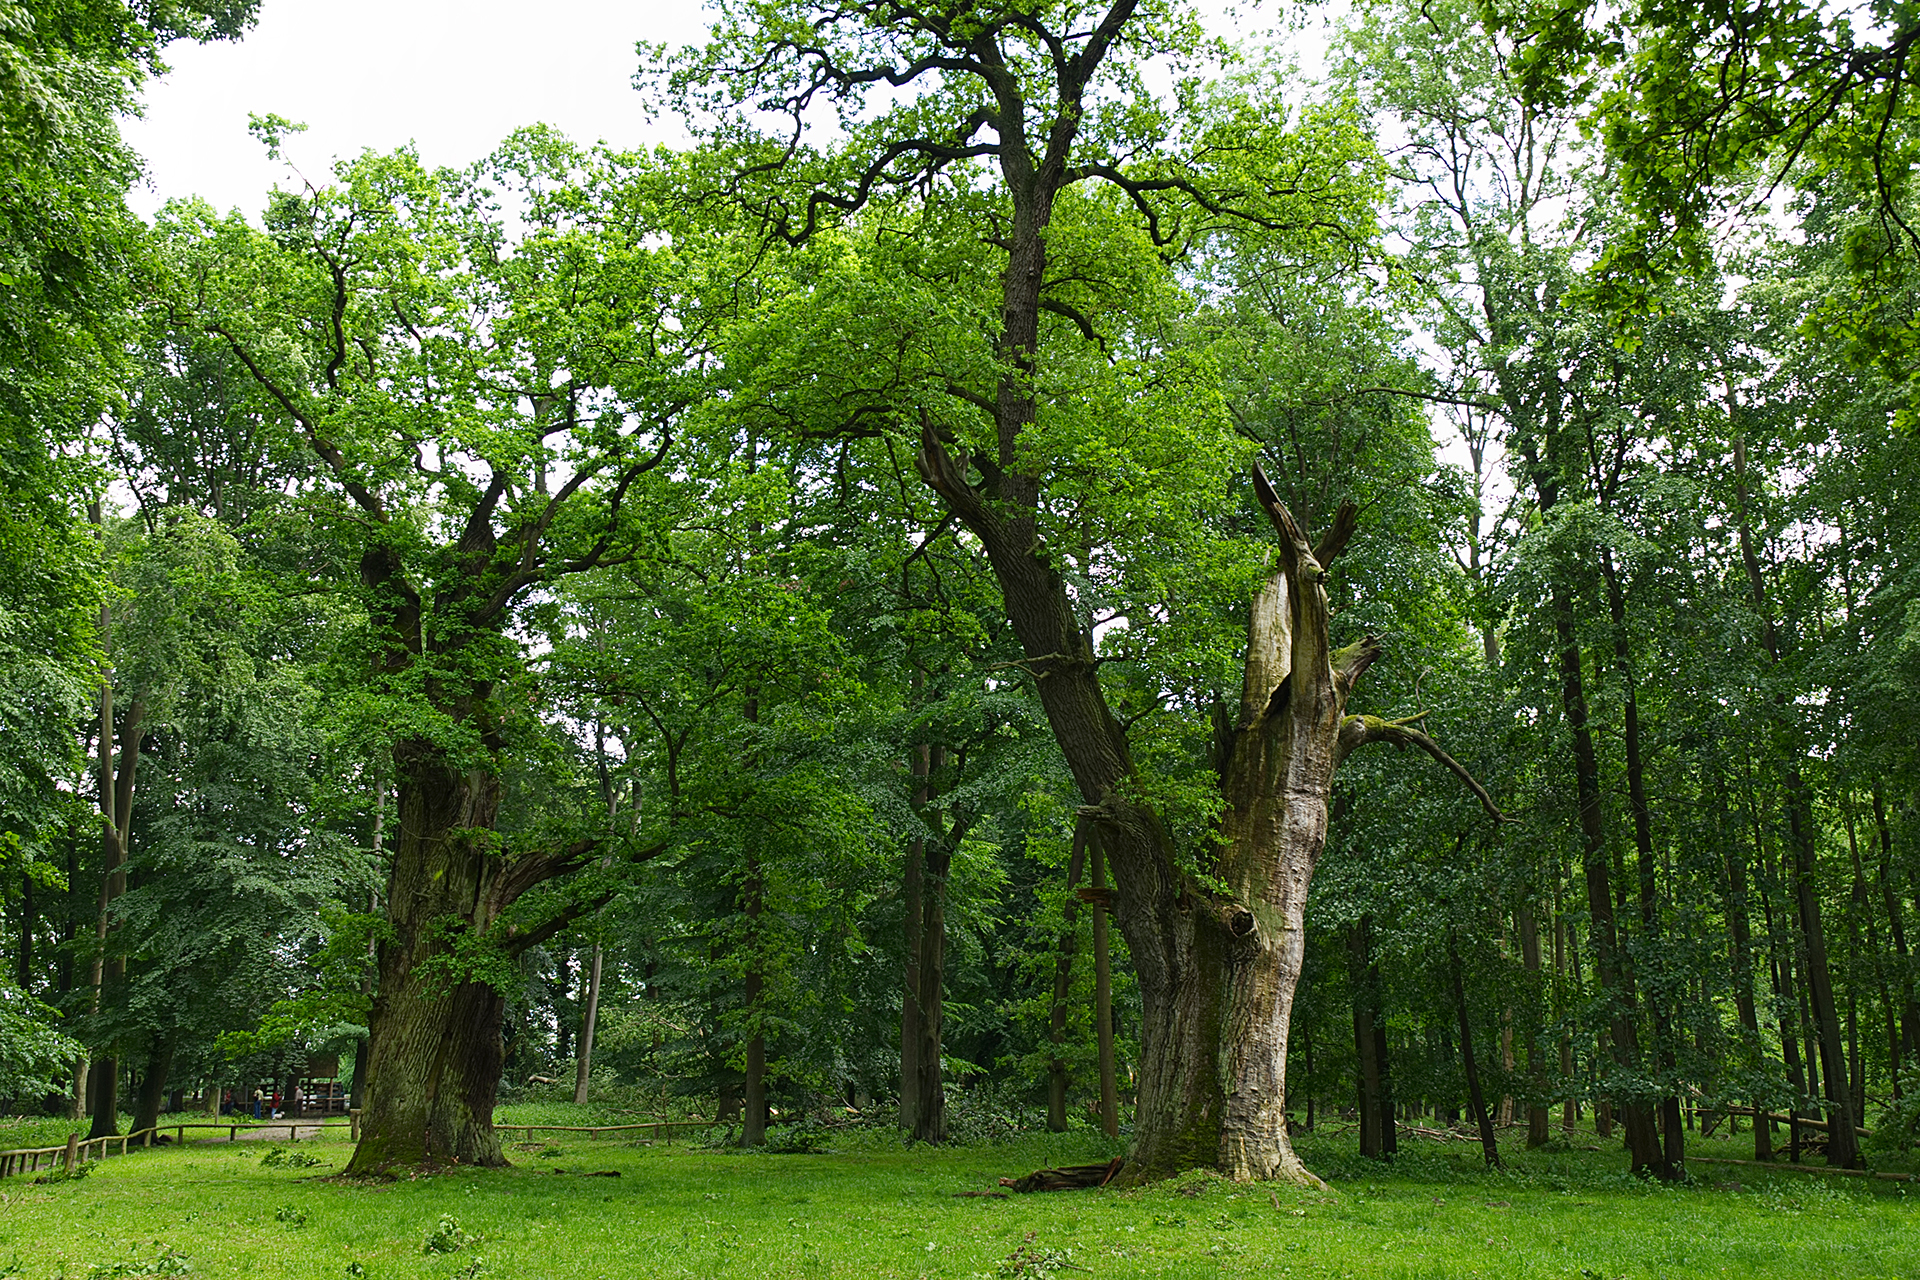 Ancient Ivanacker Oaks in Germany